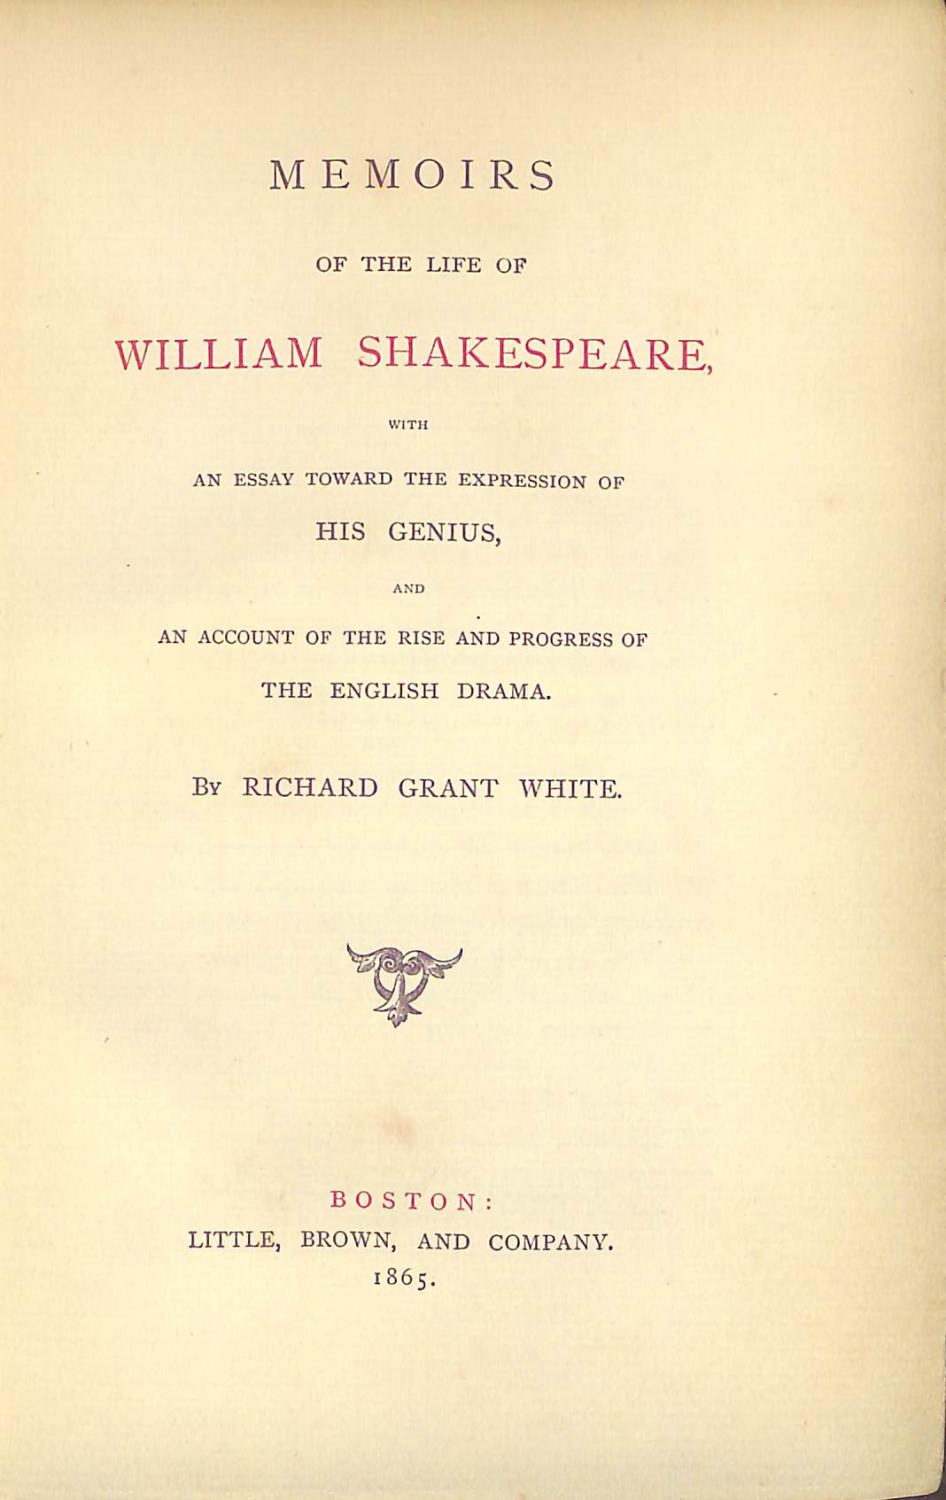 life of william shakespeare essay